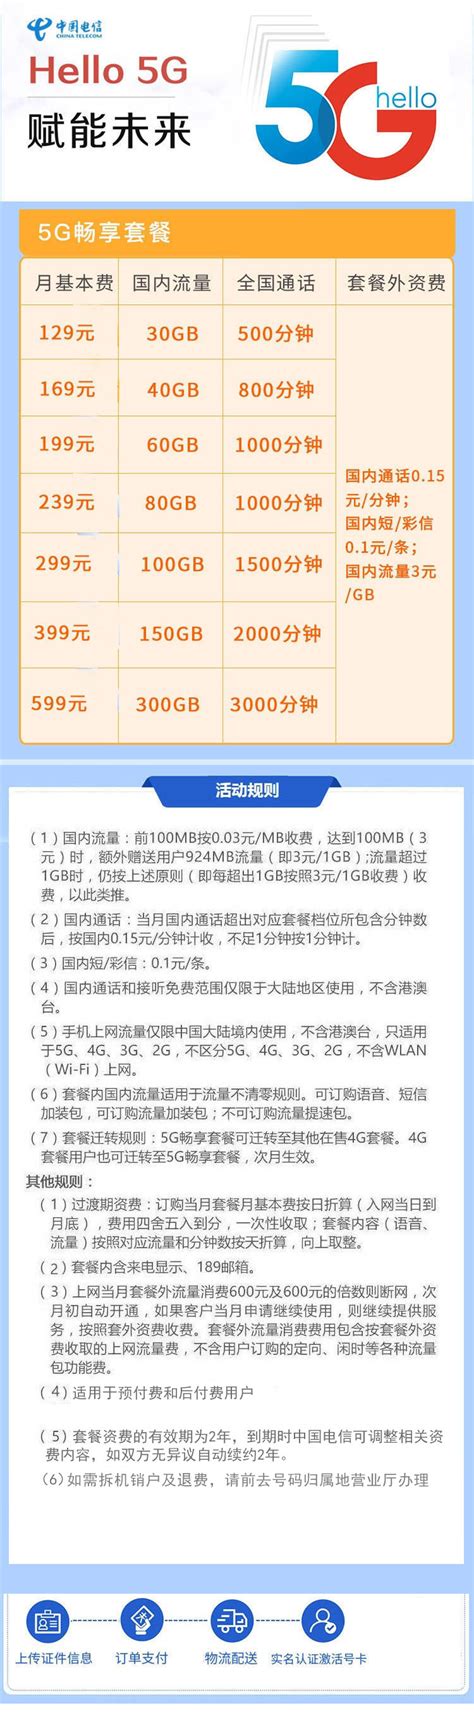 【北京自营】天翼4G无线宽带上网卡套装-天翼卖场-中国电信网上营业厅